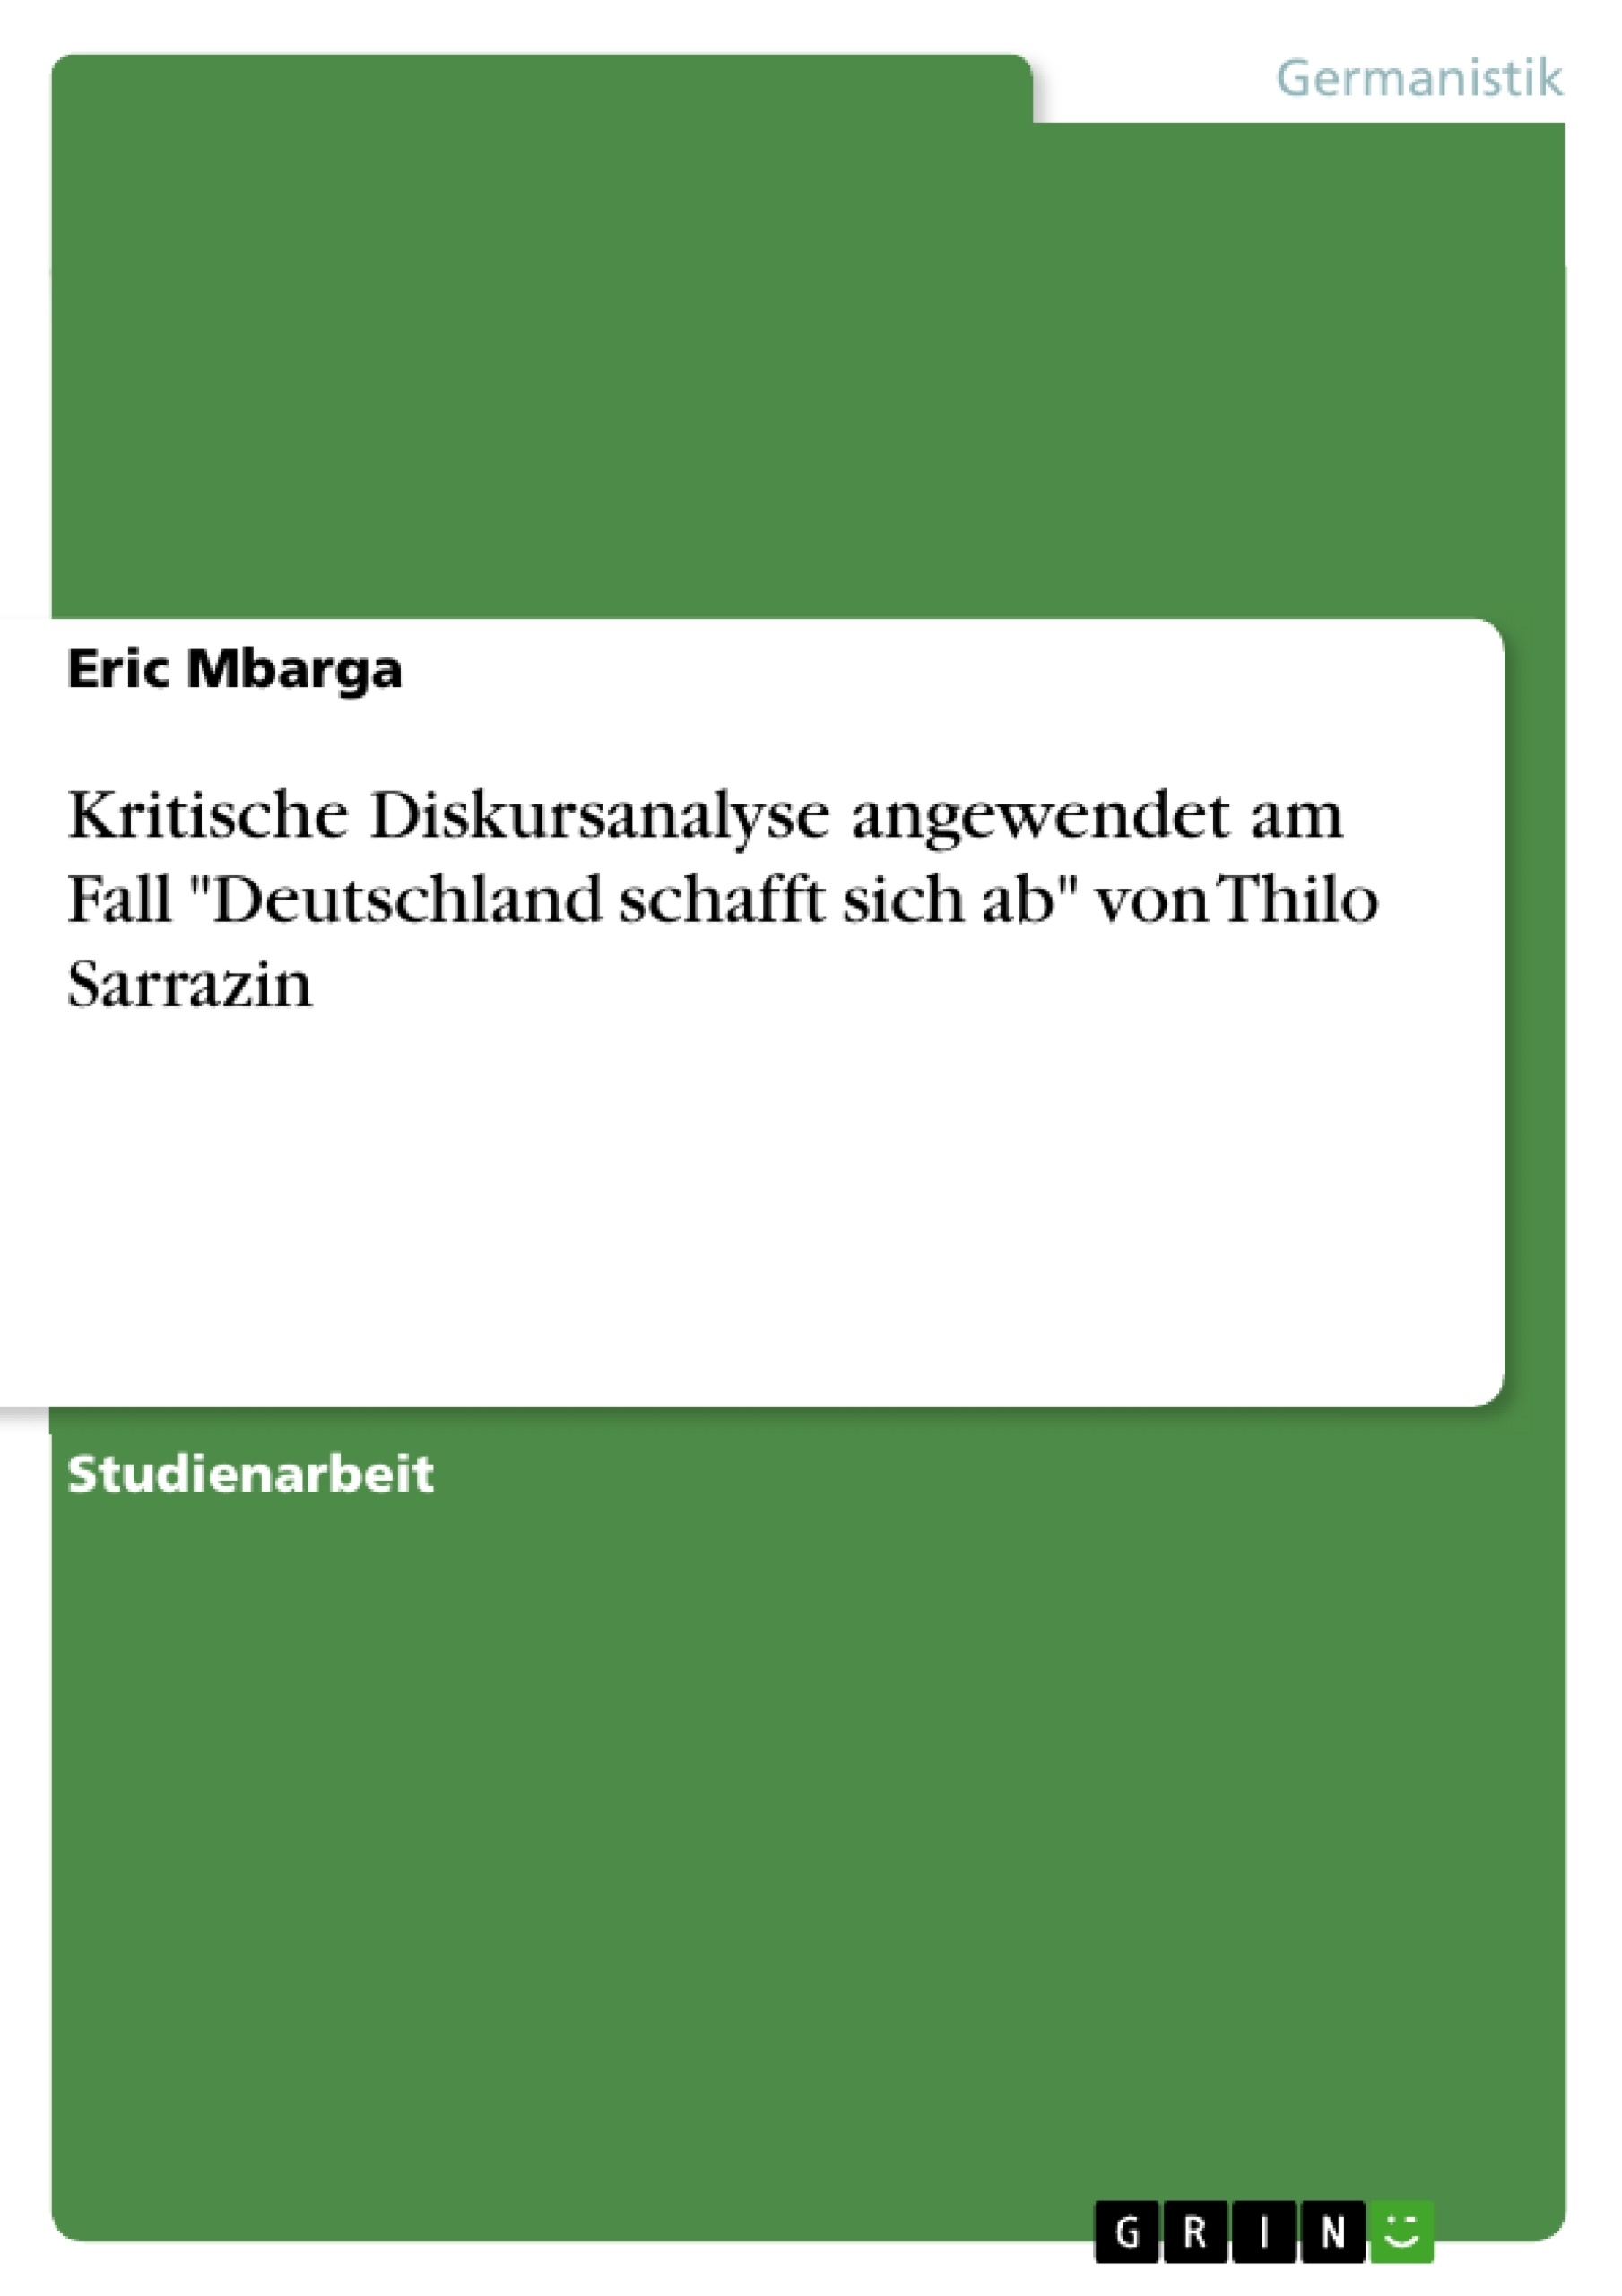 Titre: Kritische Diskursanalyse angewendet am Fall "Deutschland schafft sich ab" von Thilo Sarrazin